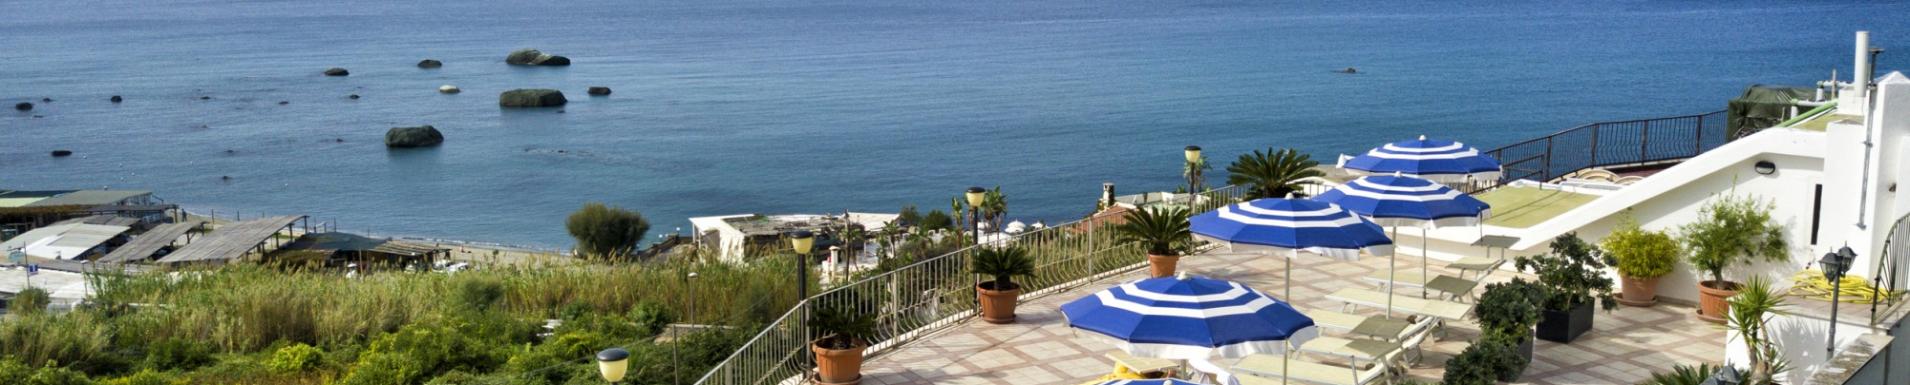 End of June offer in Ischia 